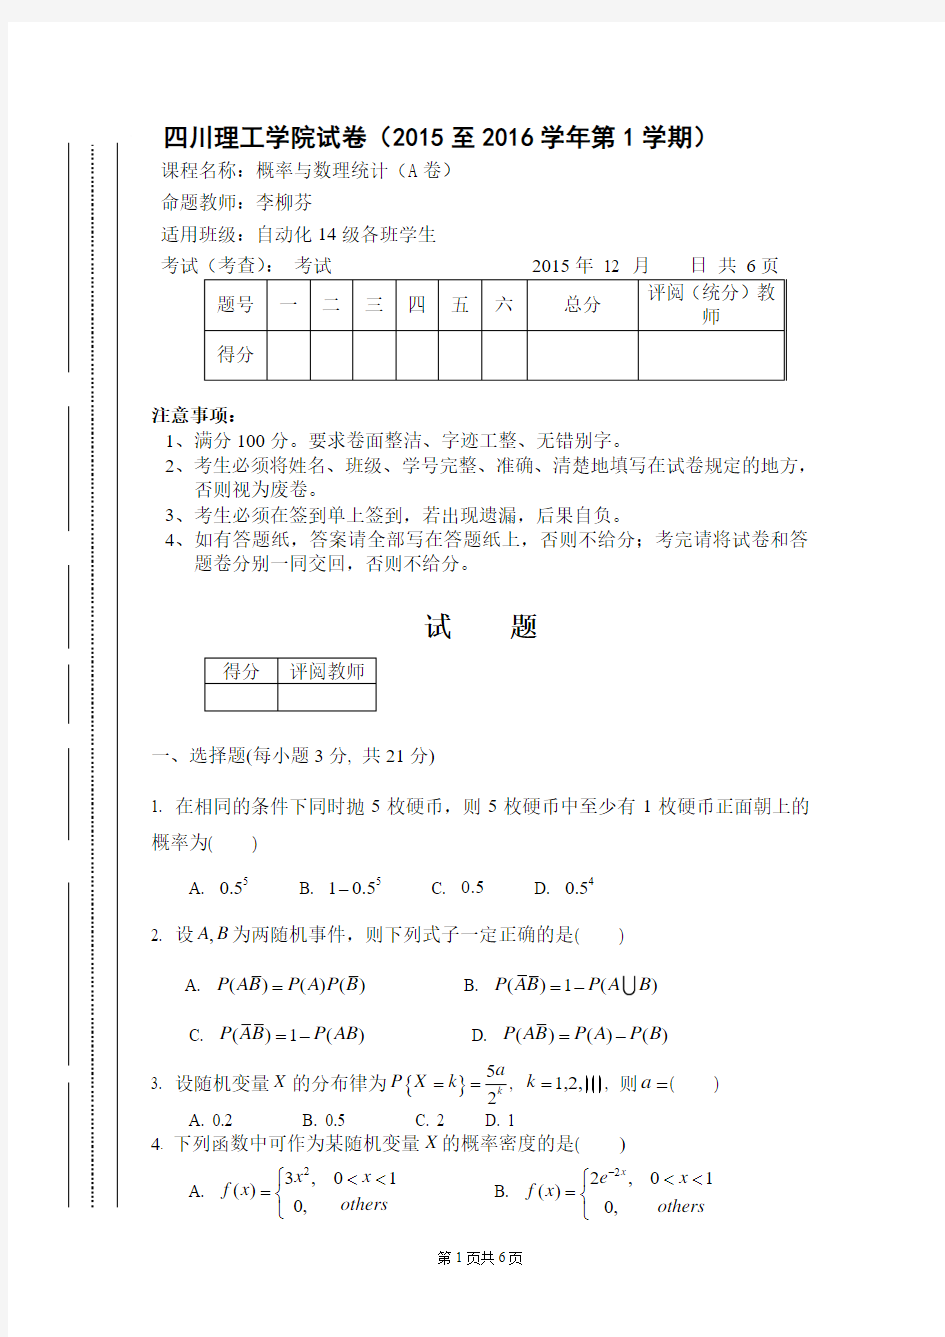 四川理工学院 概率与统计(15-16-1)A卷